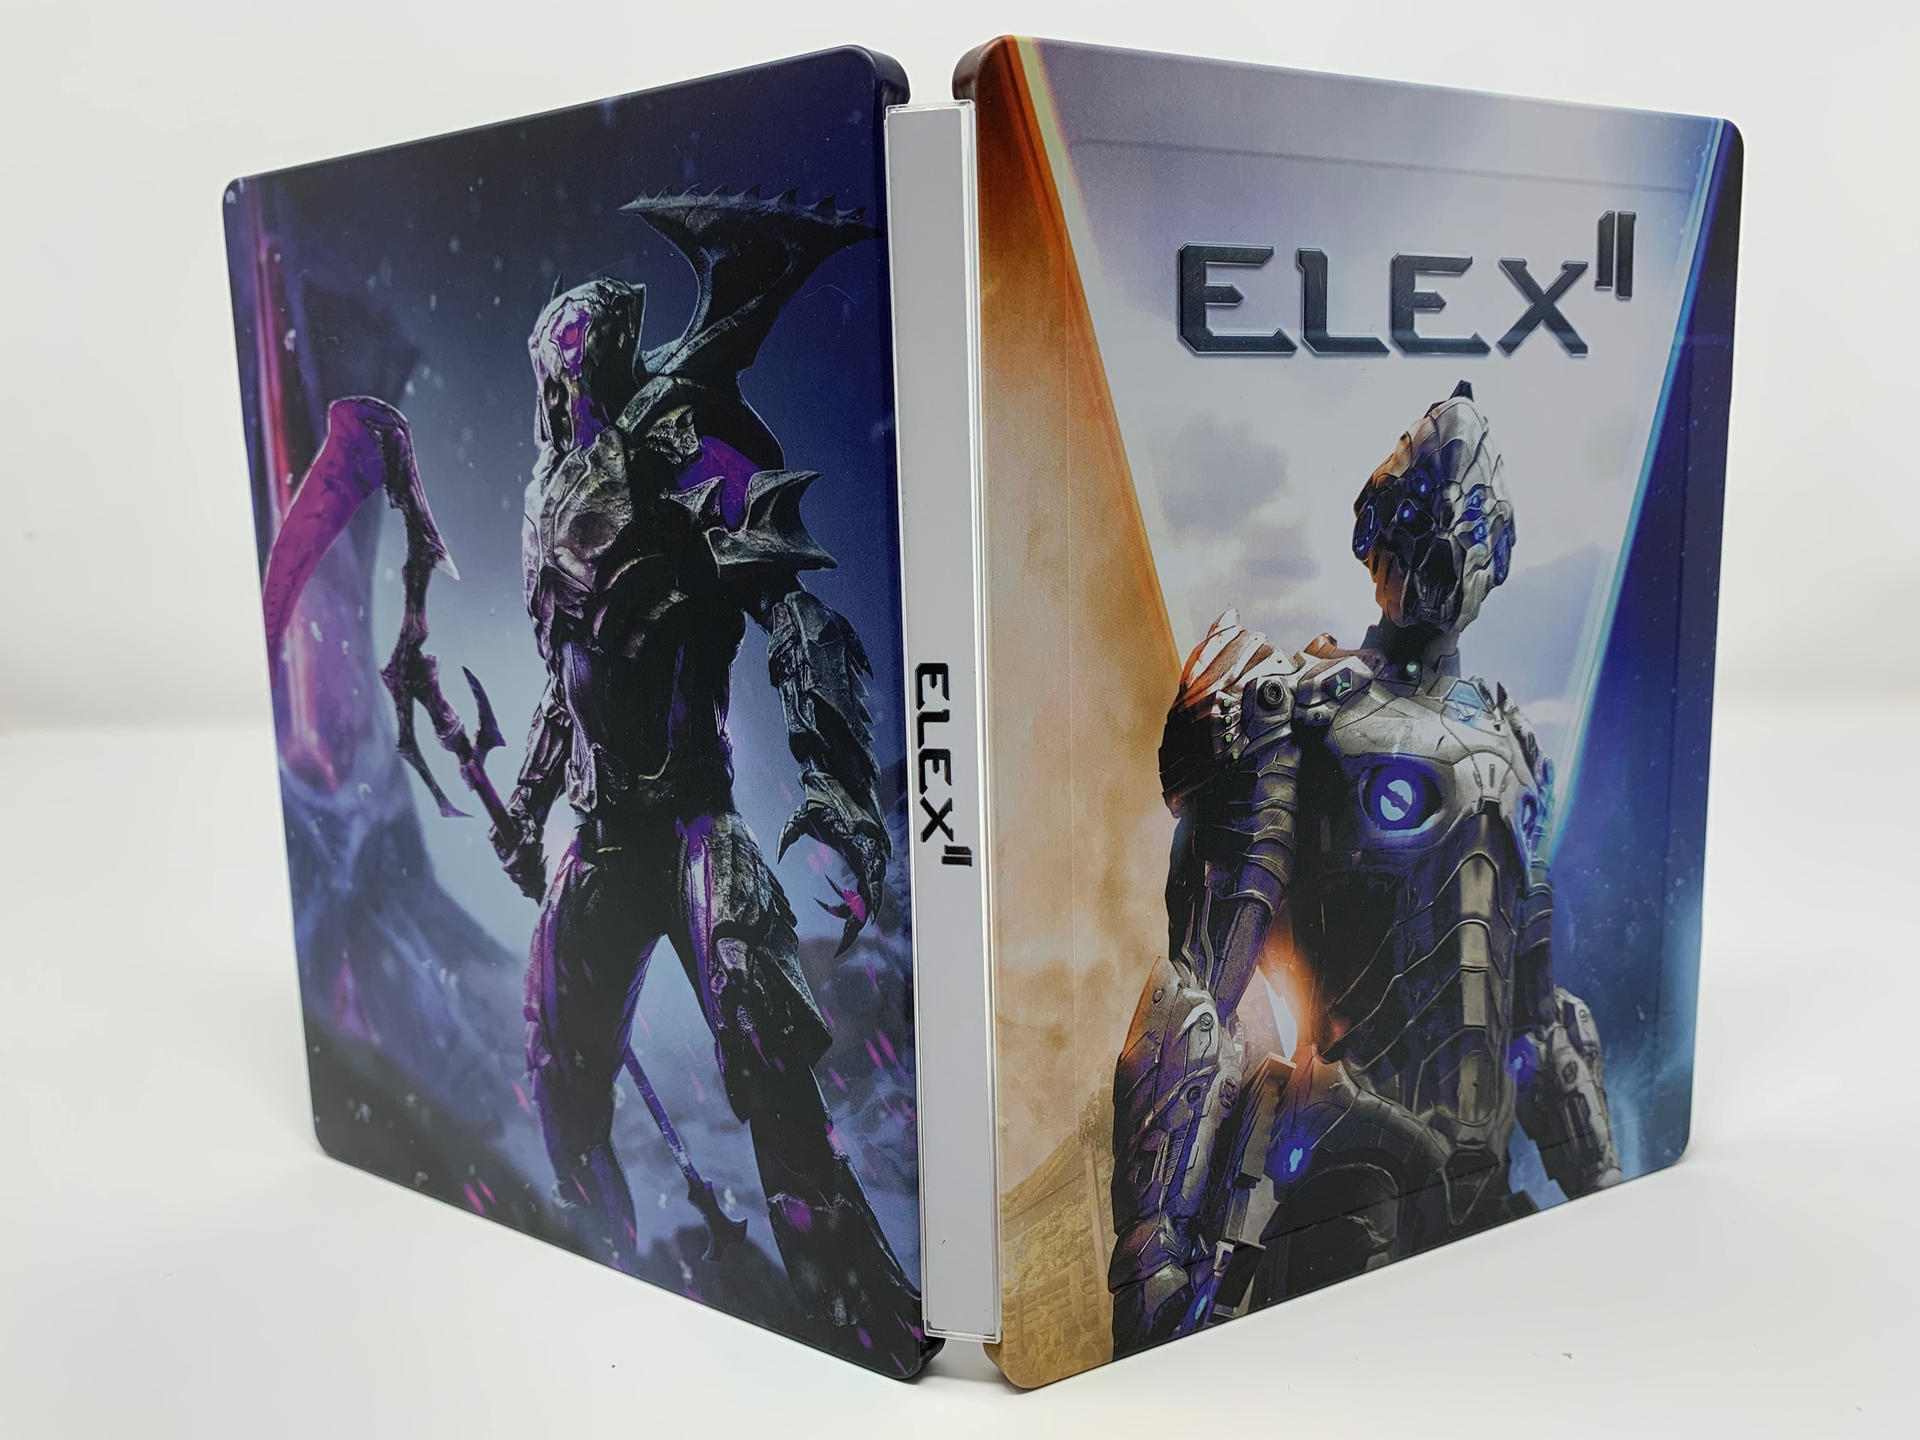 ELEX II - Day Steelbook Edition 1 4] [PlayStation 